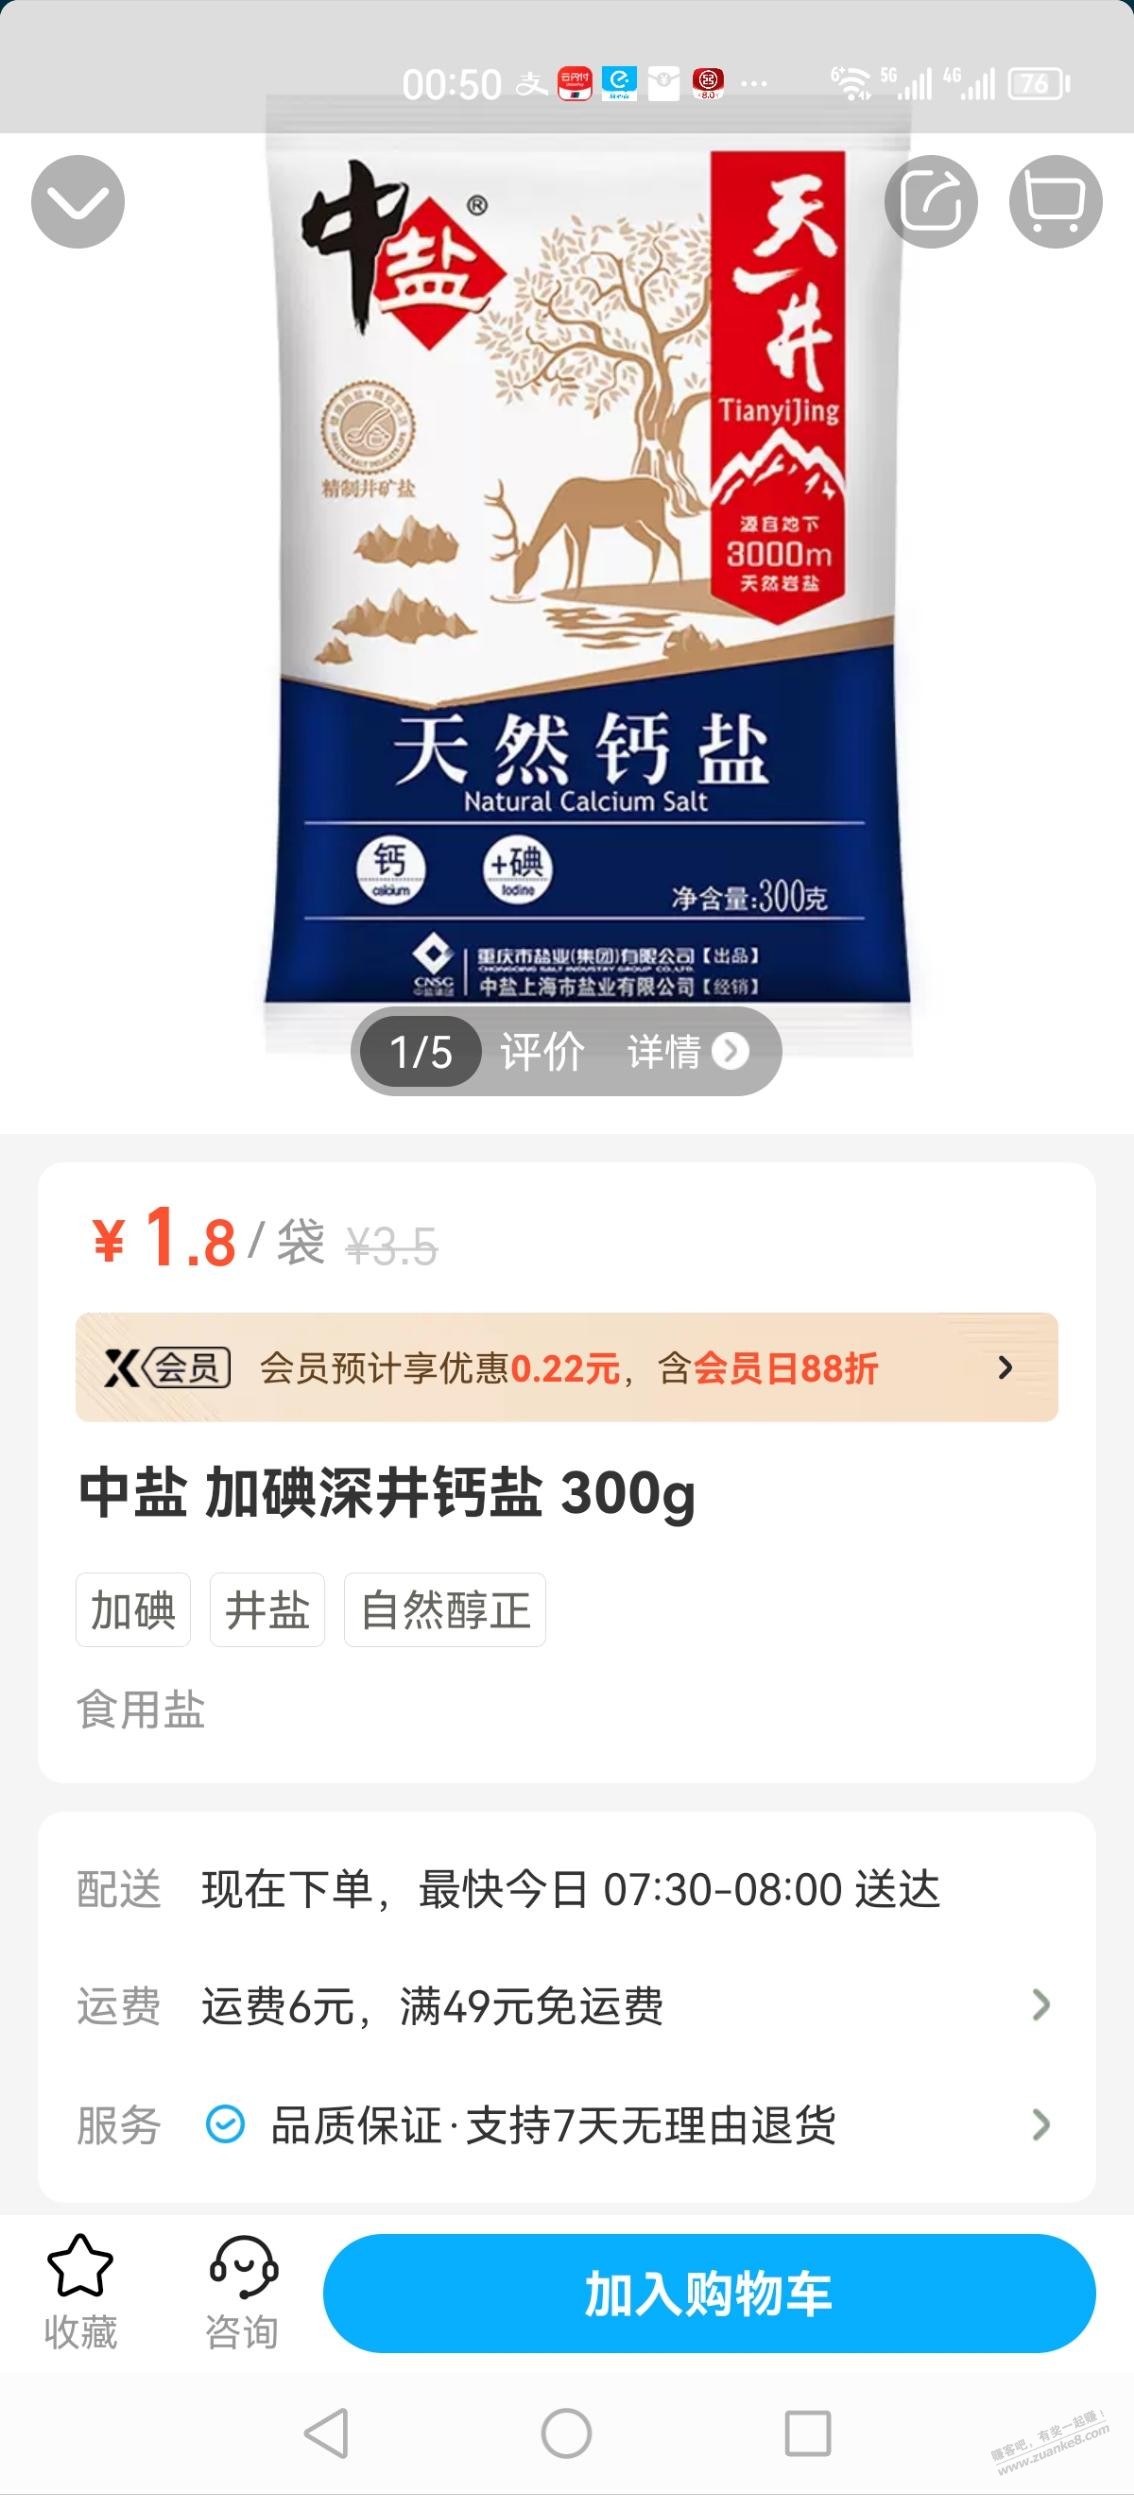 上海地区盒马盐好价-如果是x会员还能八八折-惠小助(52huixz.com)